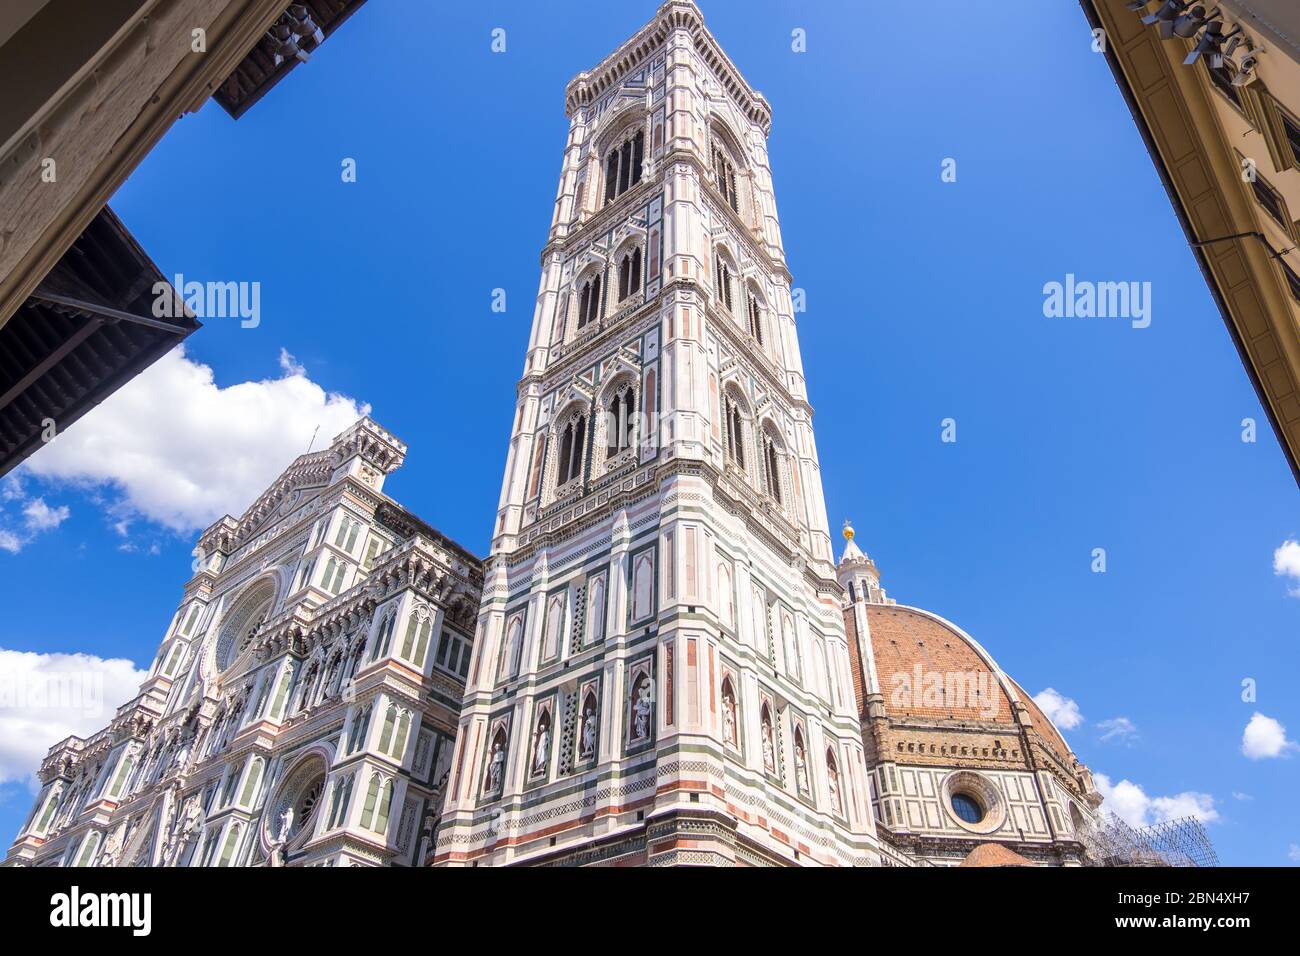 Florencia, Italia - 16 de agosto de 2019: Catedral Santa Maria del Fiore y el Campanile de Giotto en la Piazza del Duomo de Florencia Foto de stock